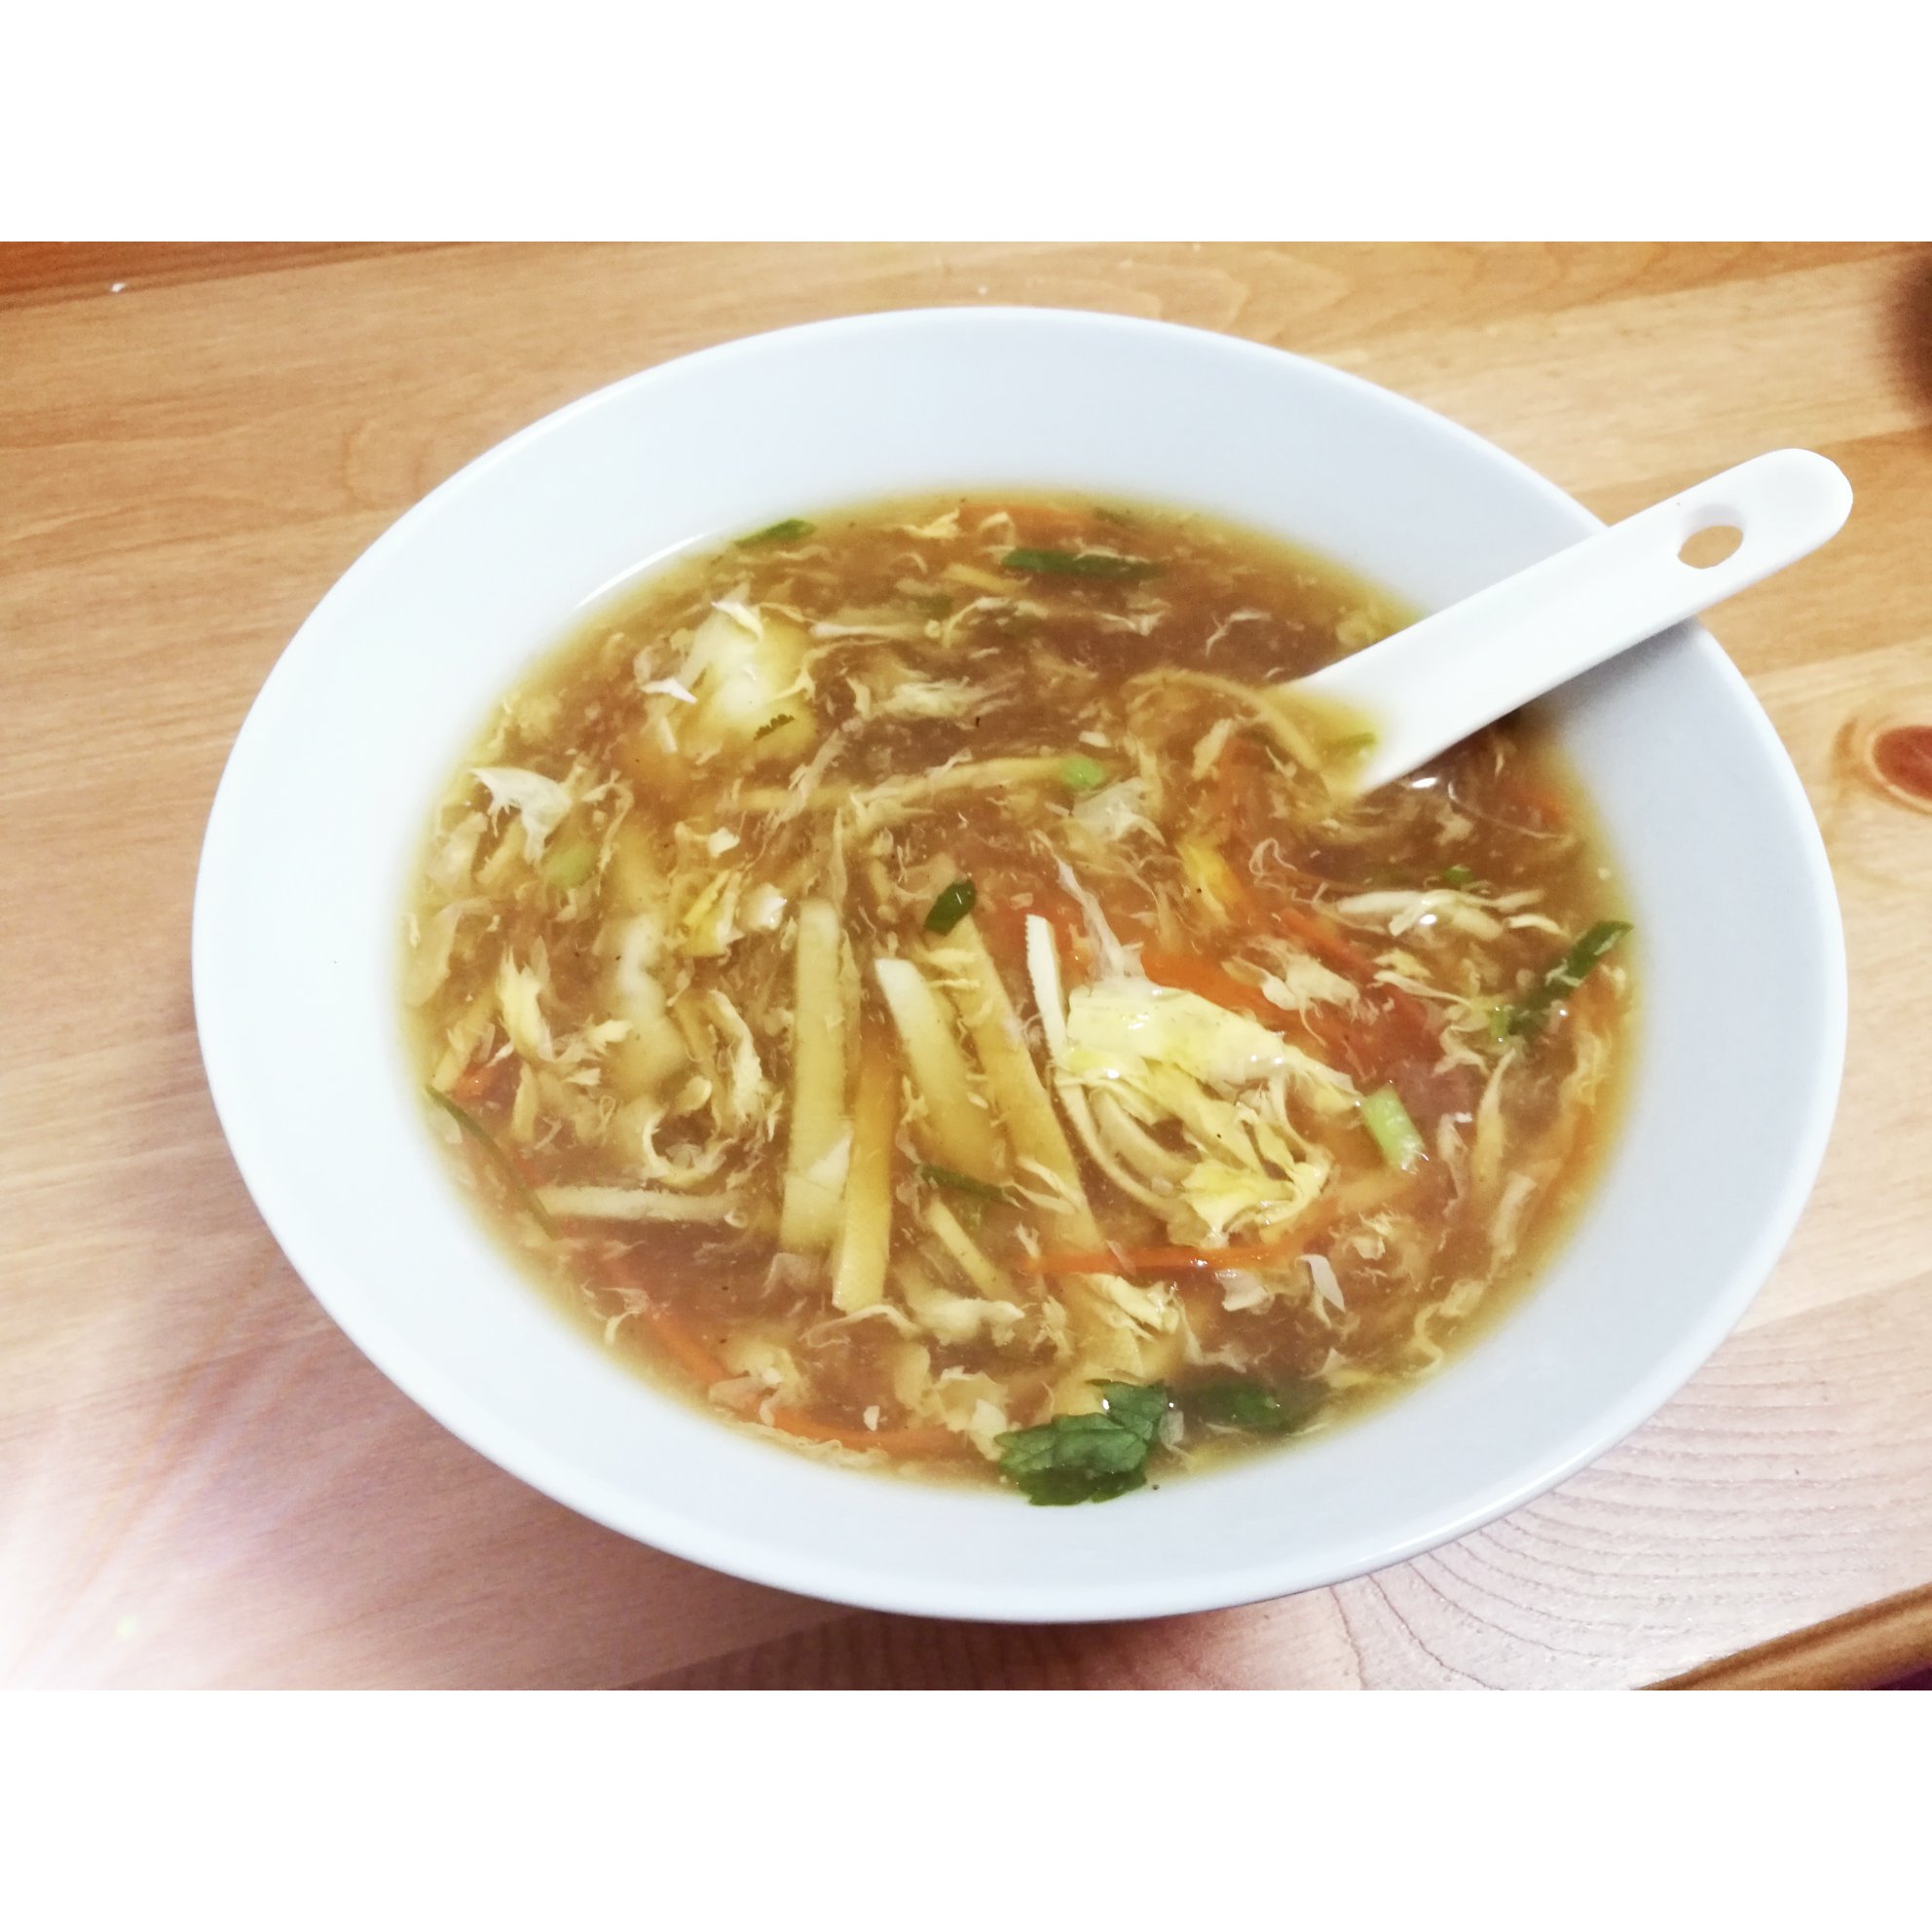 酸辣汤 Spicy & Sour Shredded Pork Soup